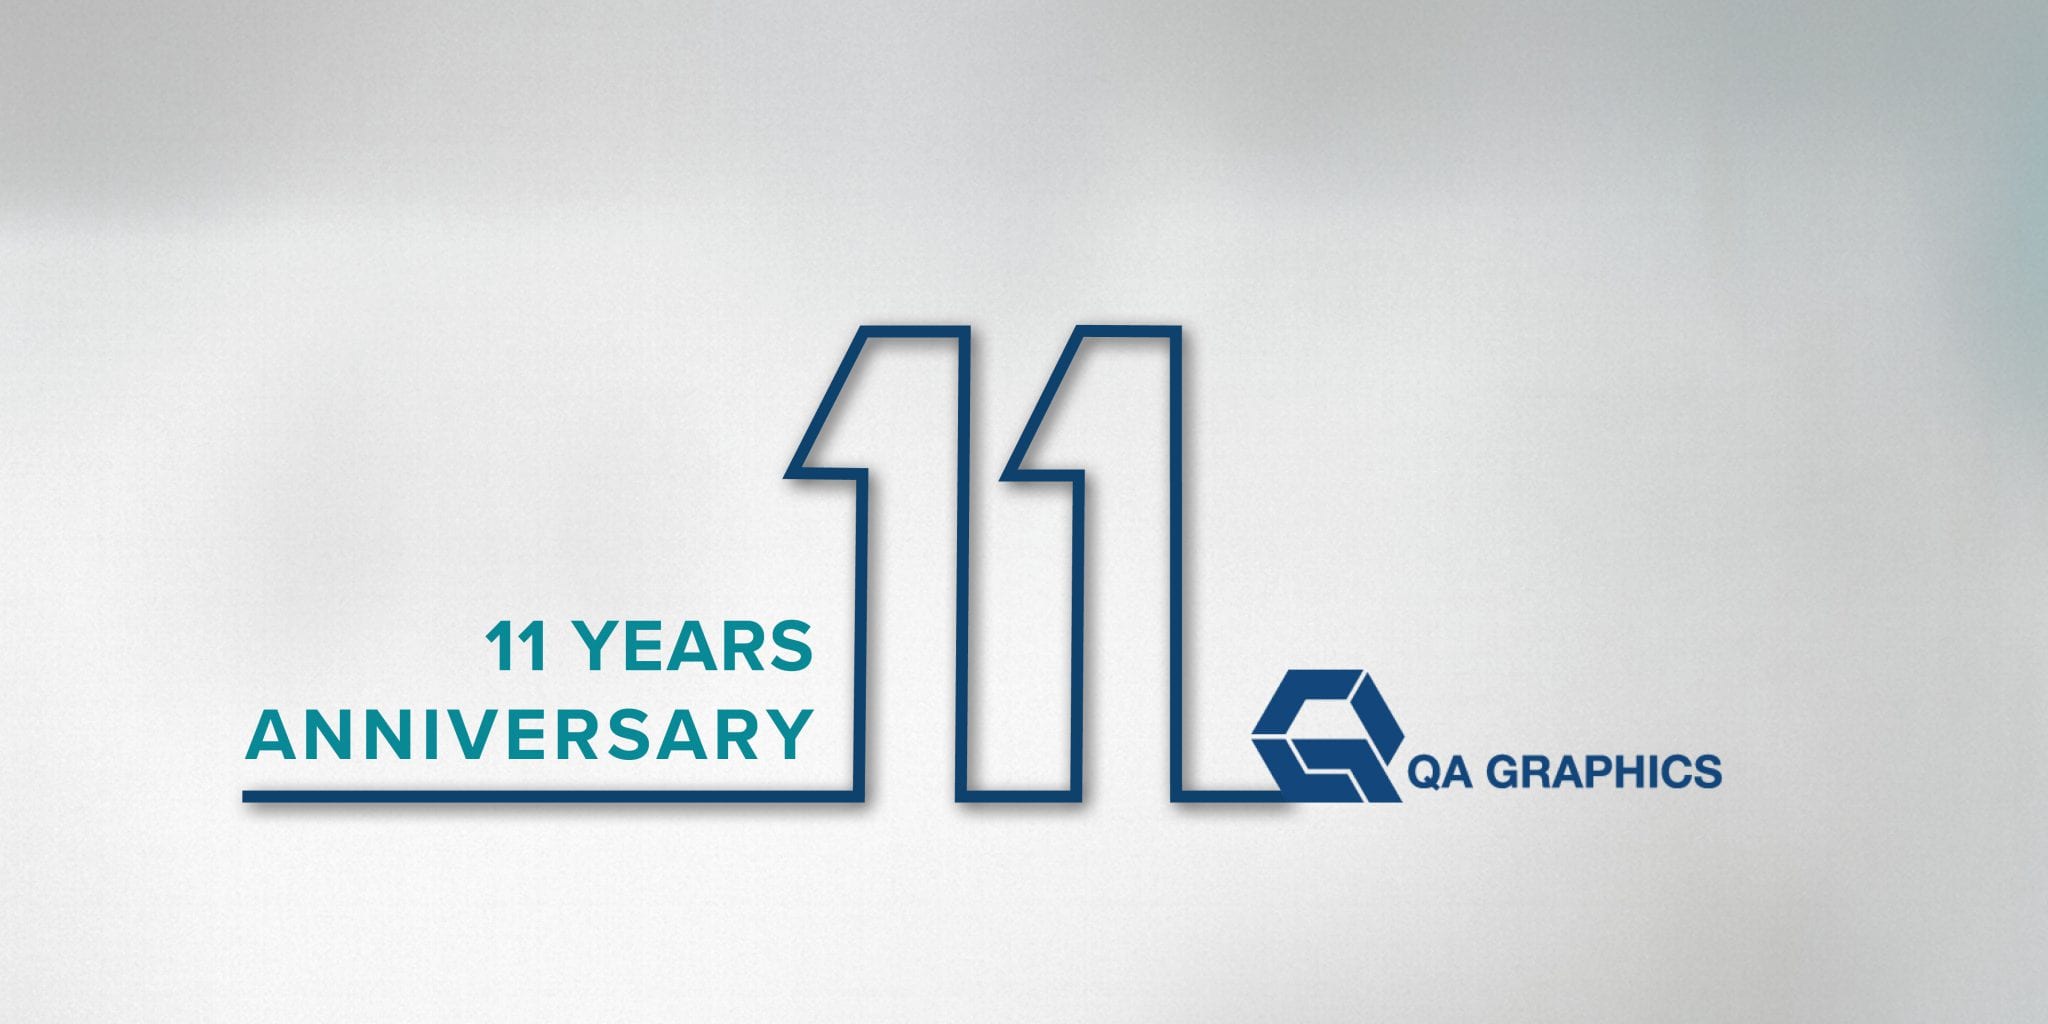 QA Graphics 11 year anniversary image